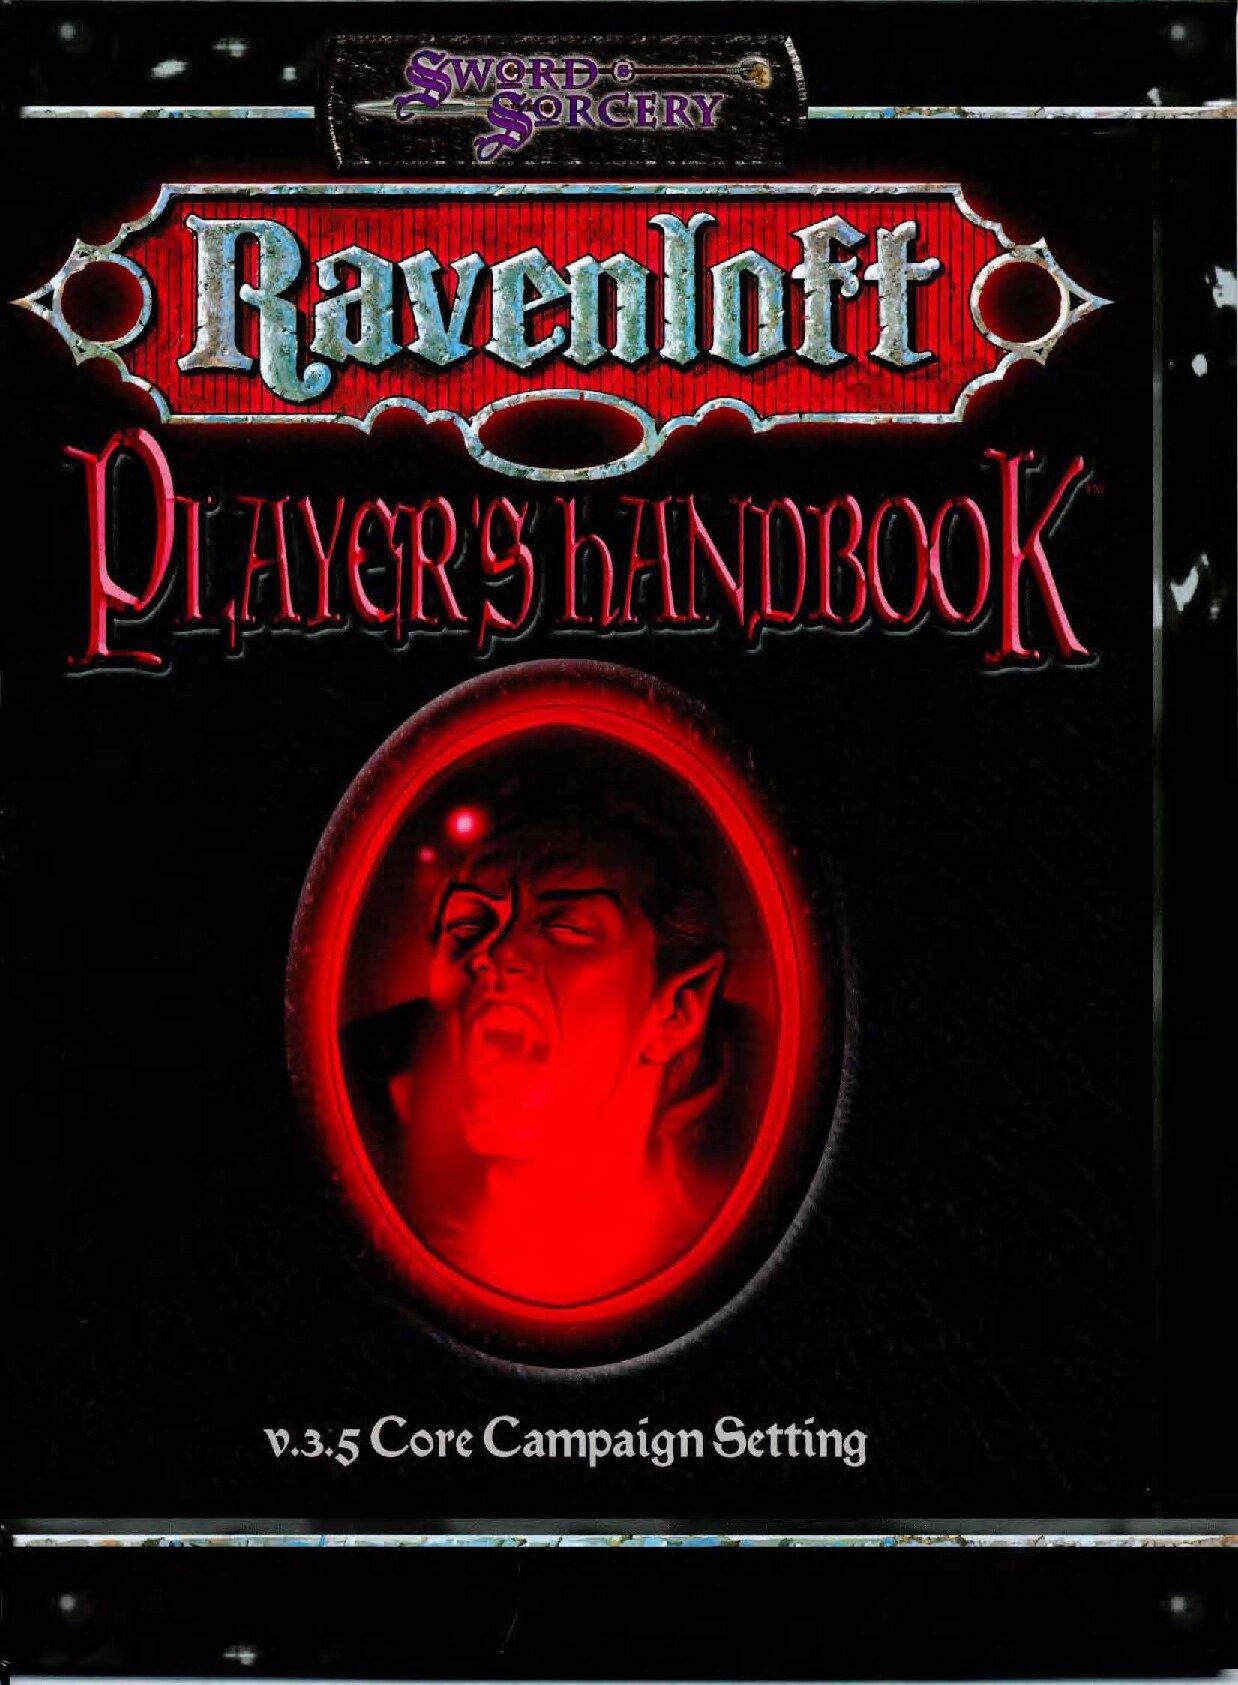 Ravenloft Player's Handbook